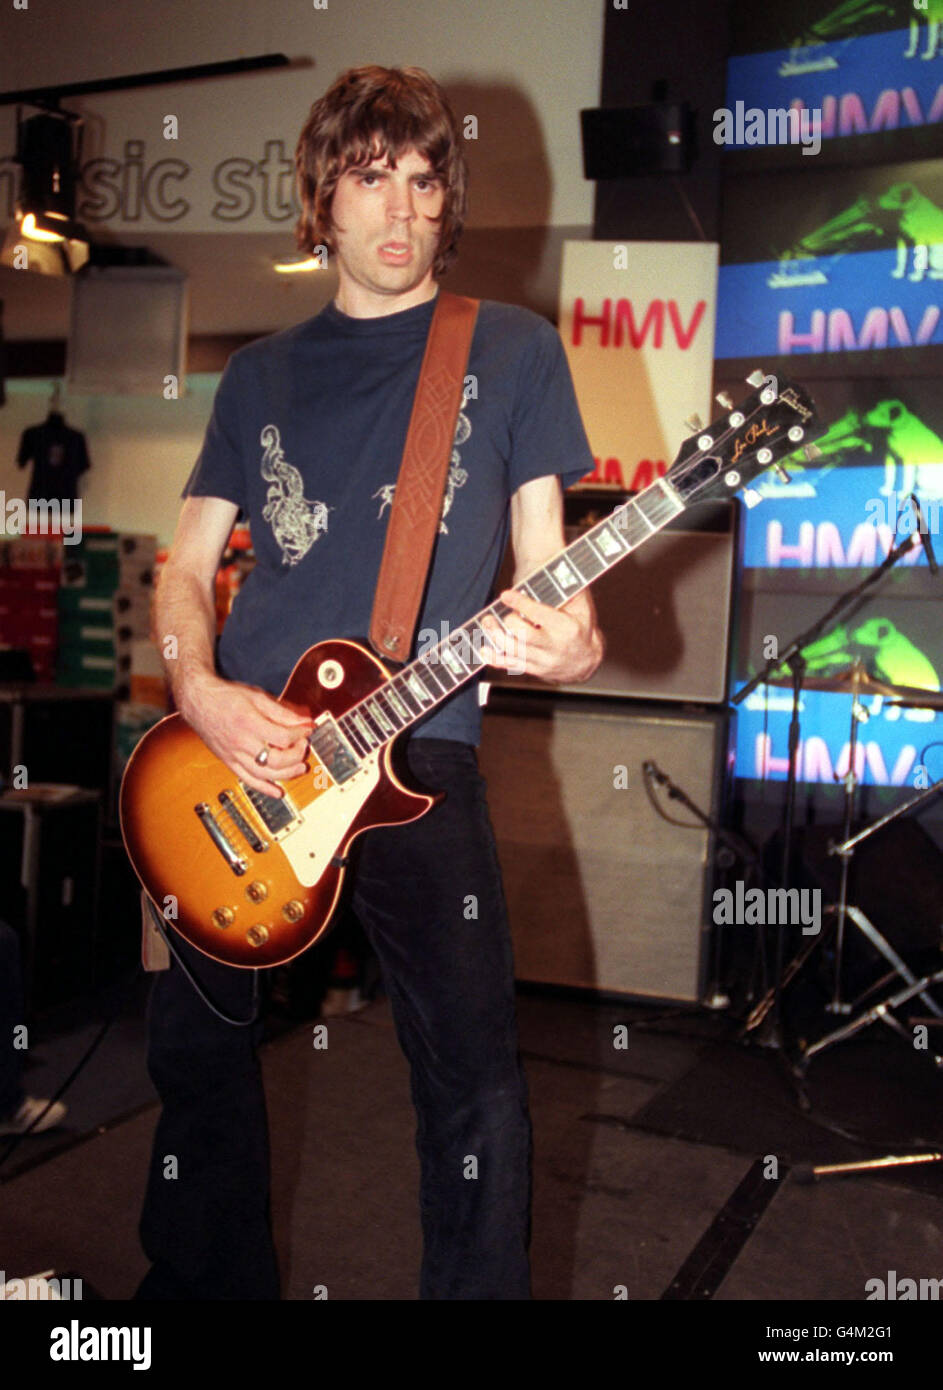 Il chitarrista Tom Gladwin della band Shed Seven, sul palco del negozio HMV di Oxford Street, Londra, per promuovere il loro nuovo album "Best of...", Going for Gold. Foto Stock